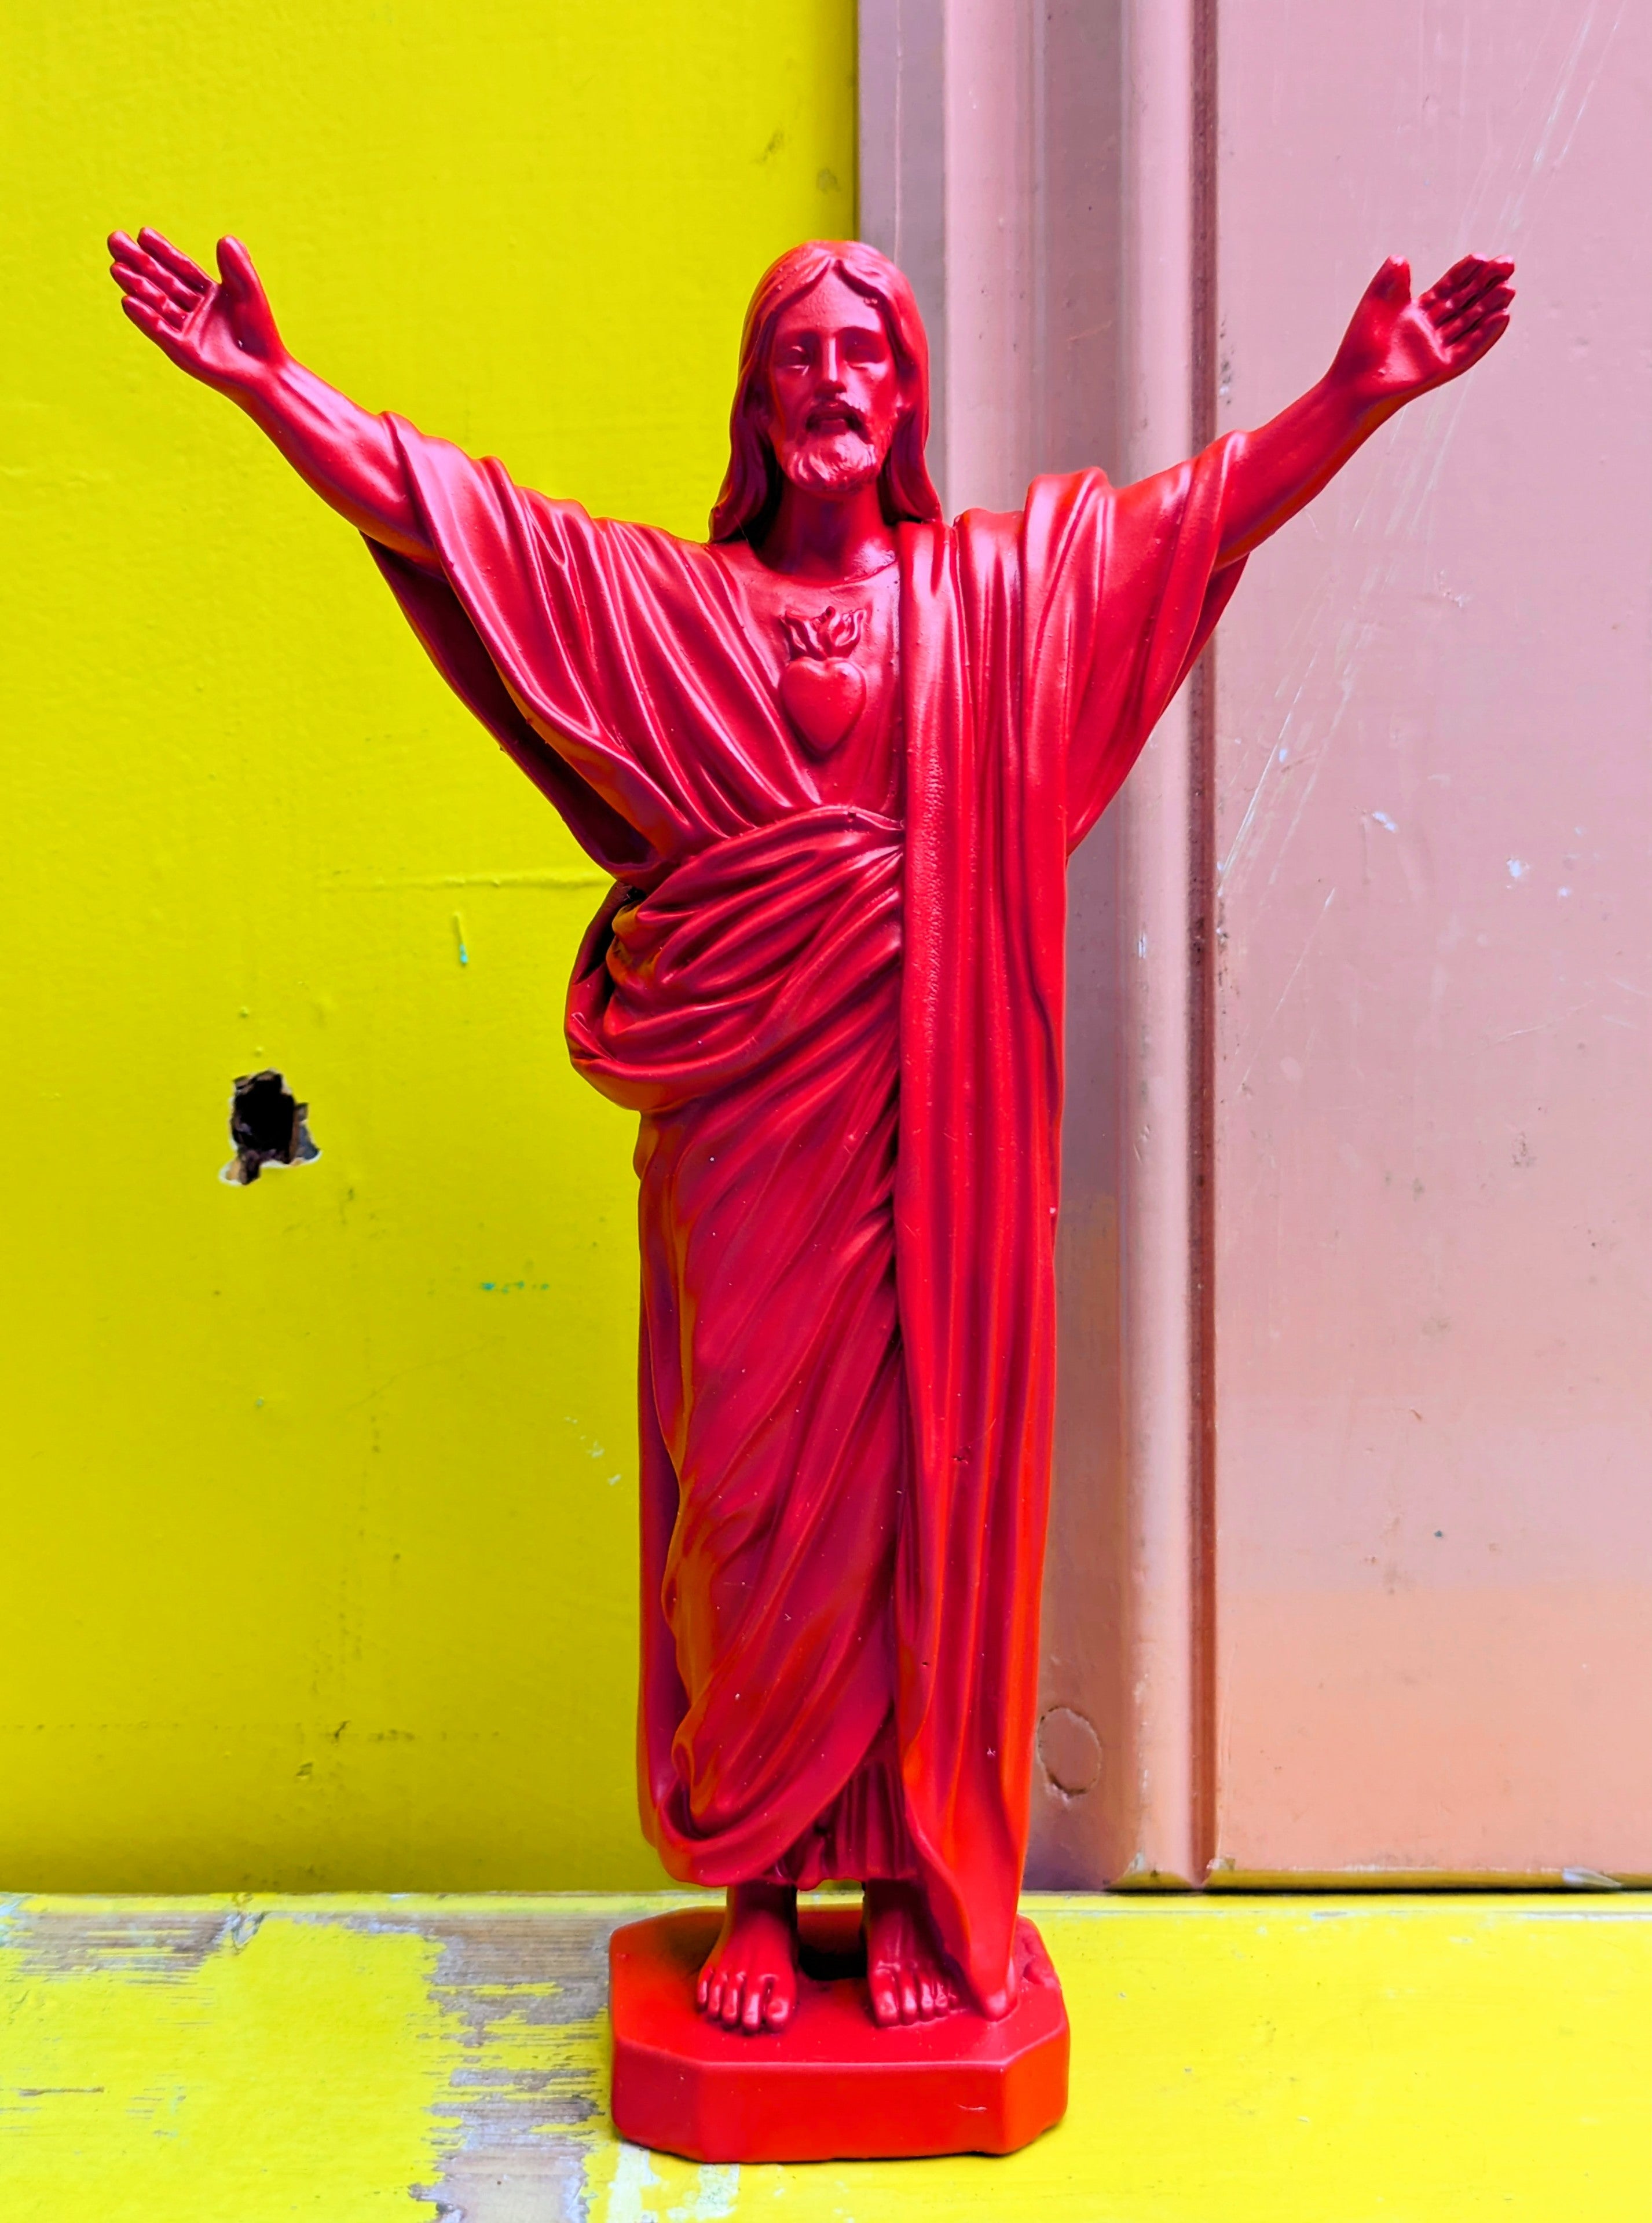 Divine kitsch statues - Jesus